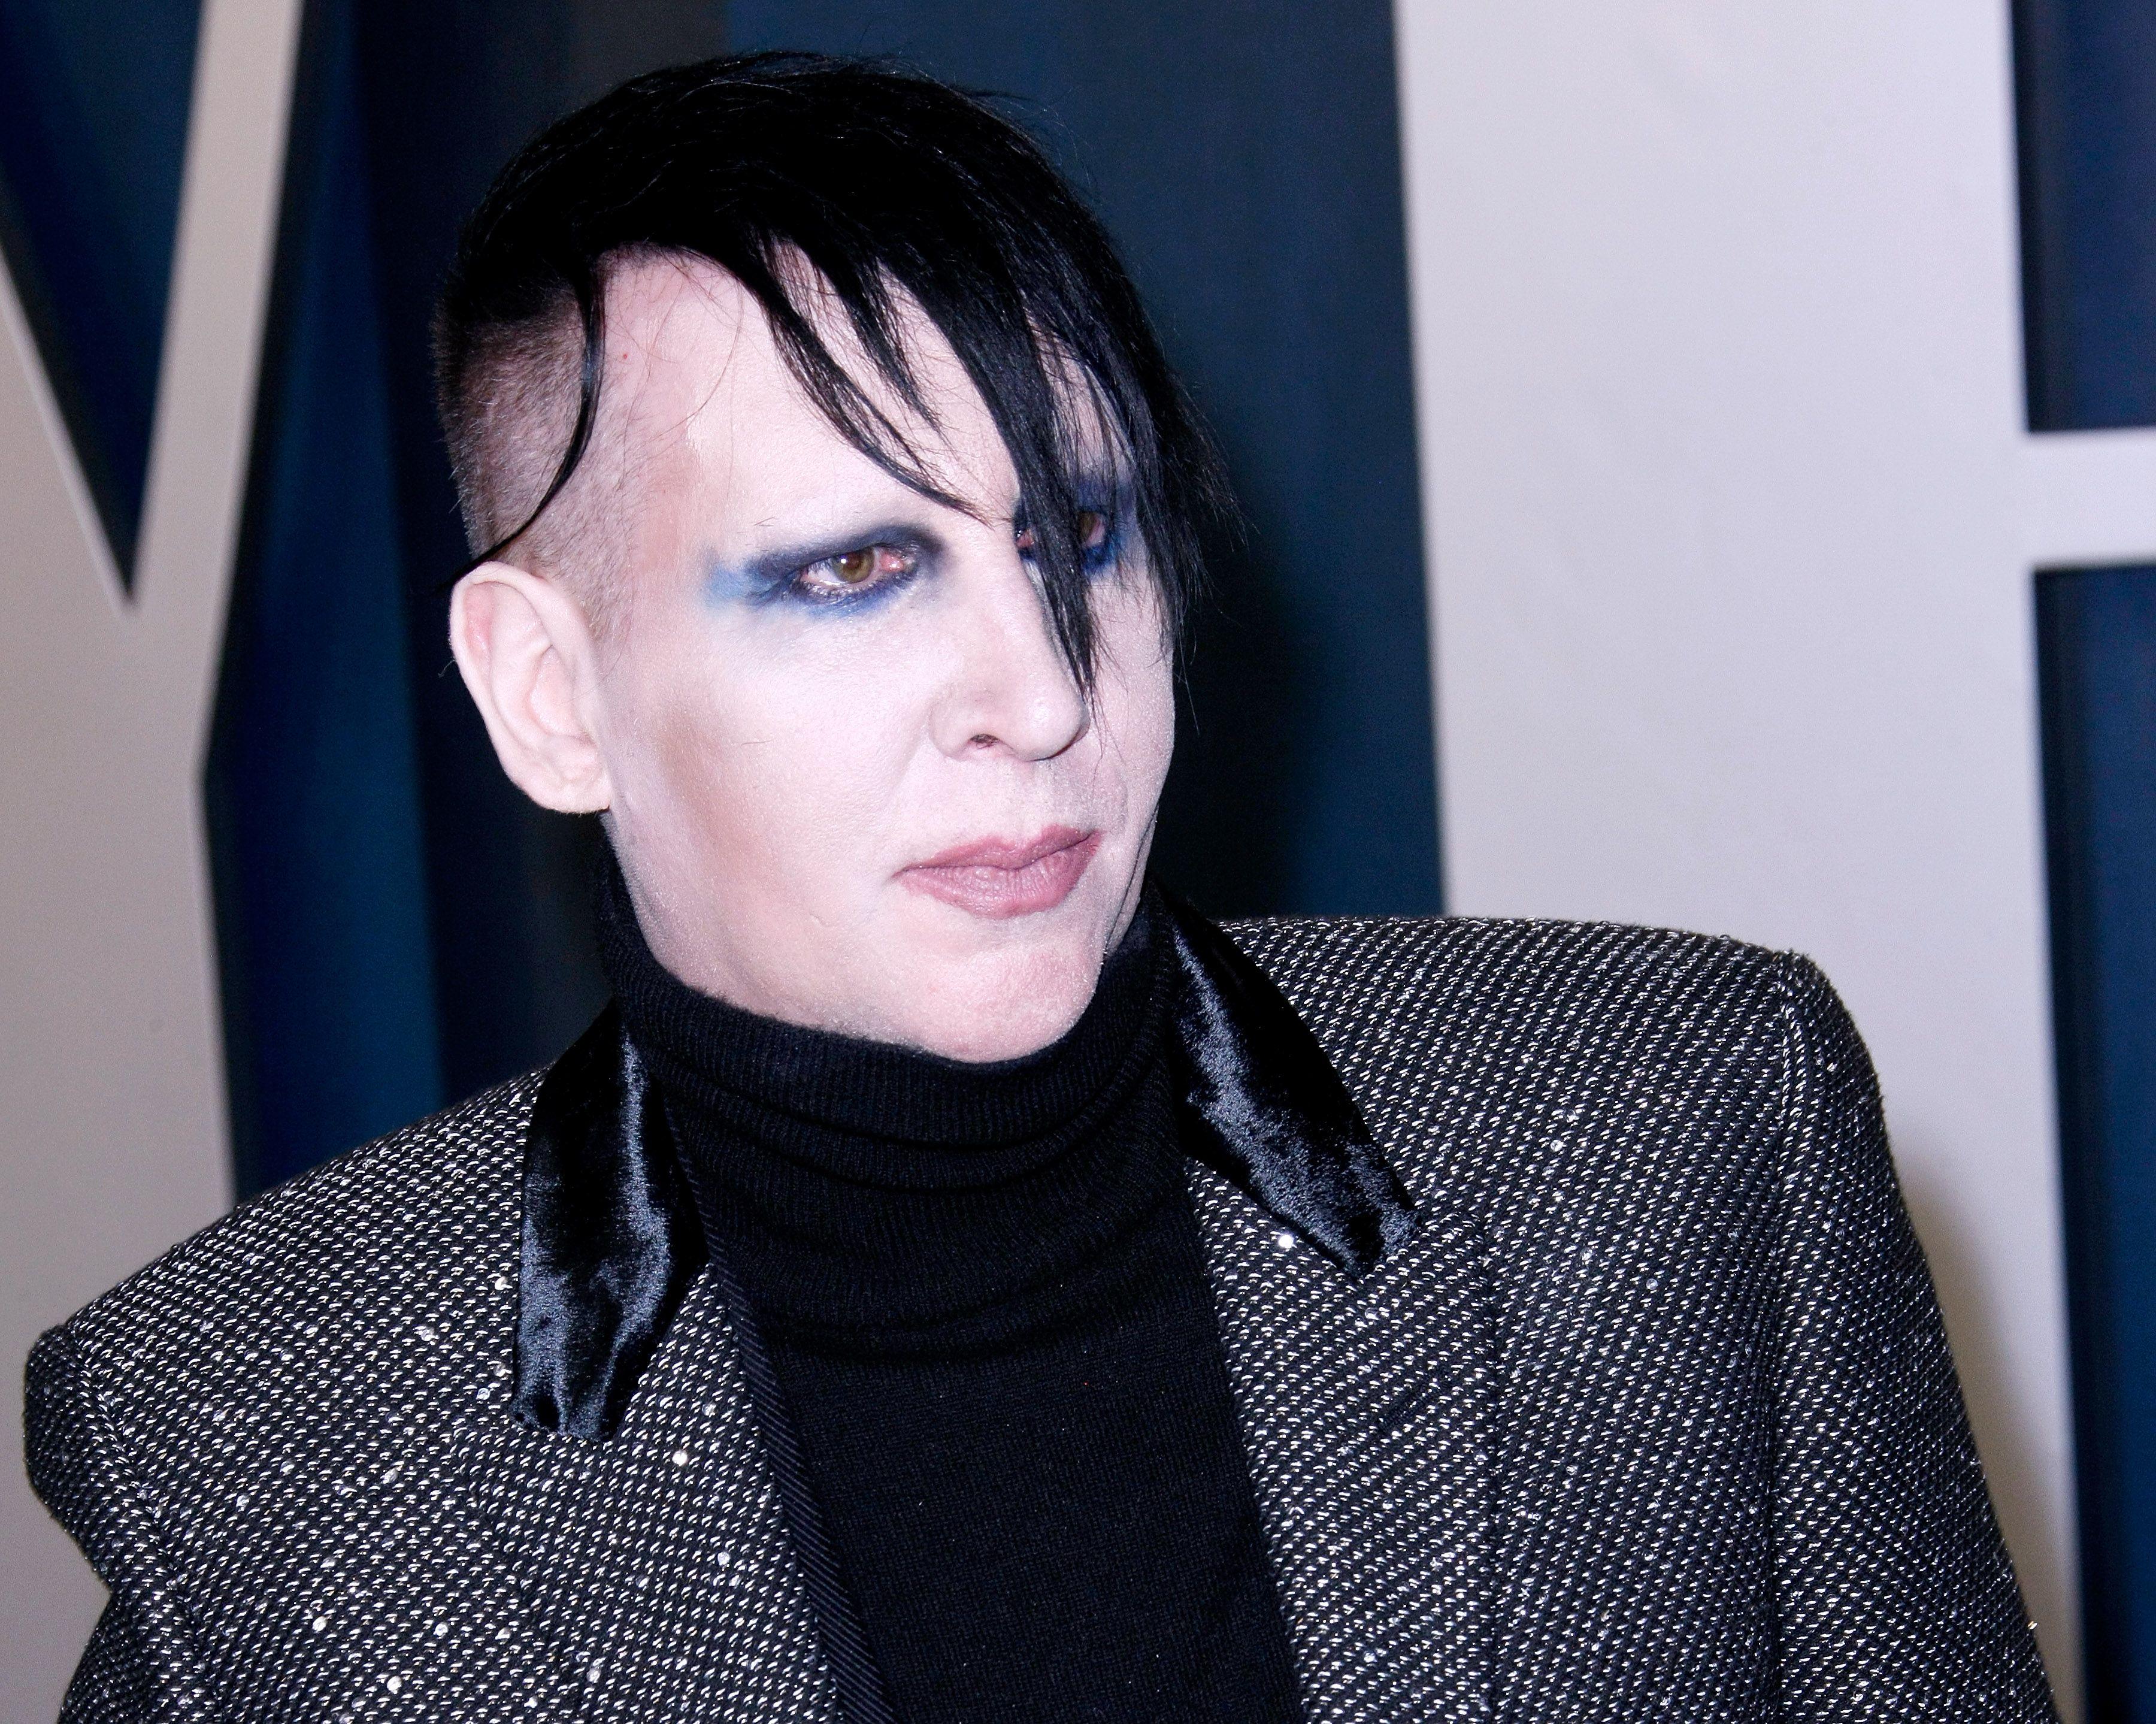 Marilyn Manson, îmbărcat în costum, fotografiat la un eveniment special